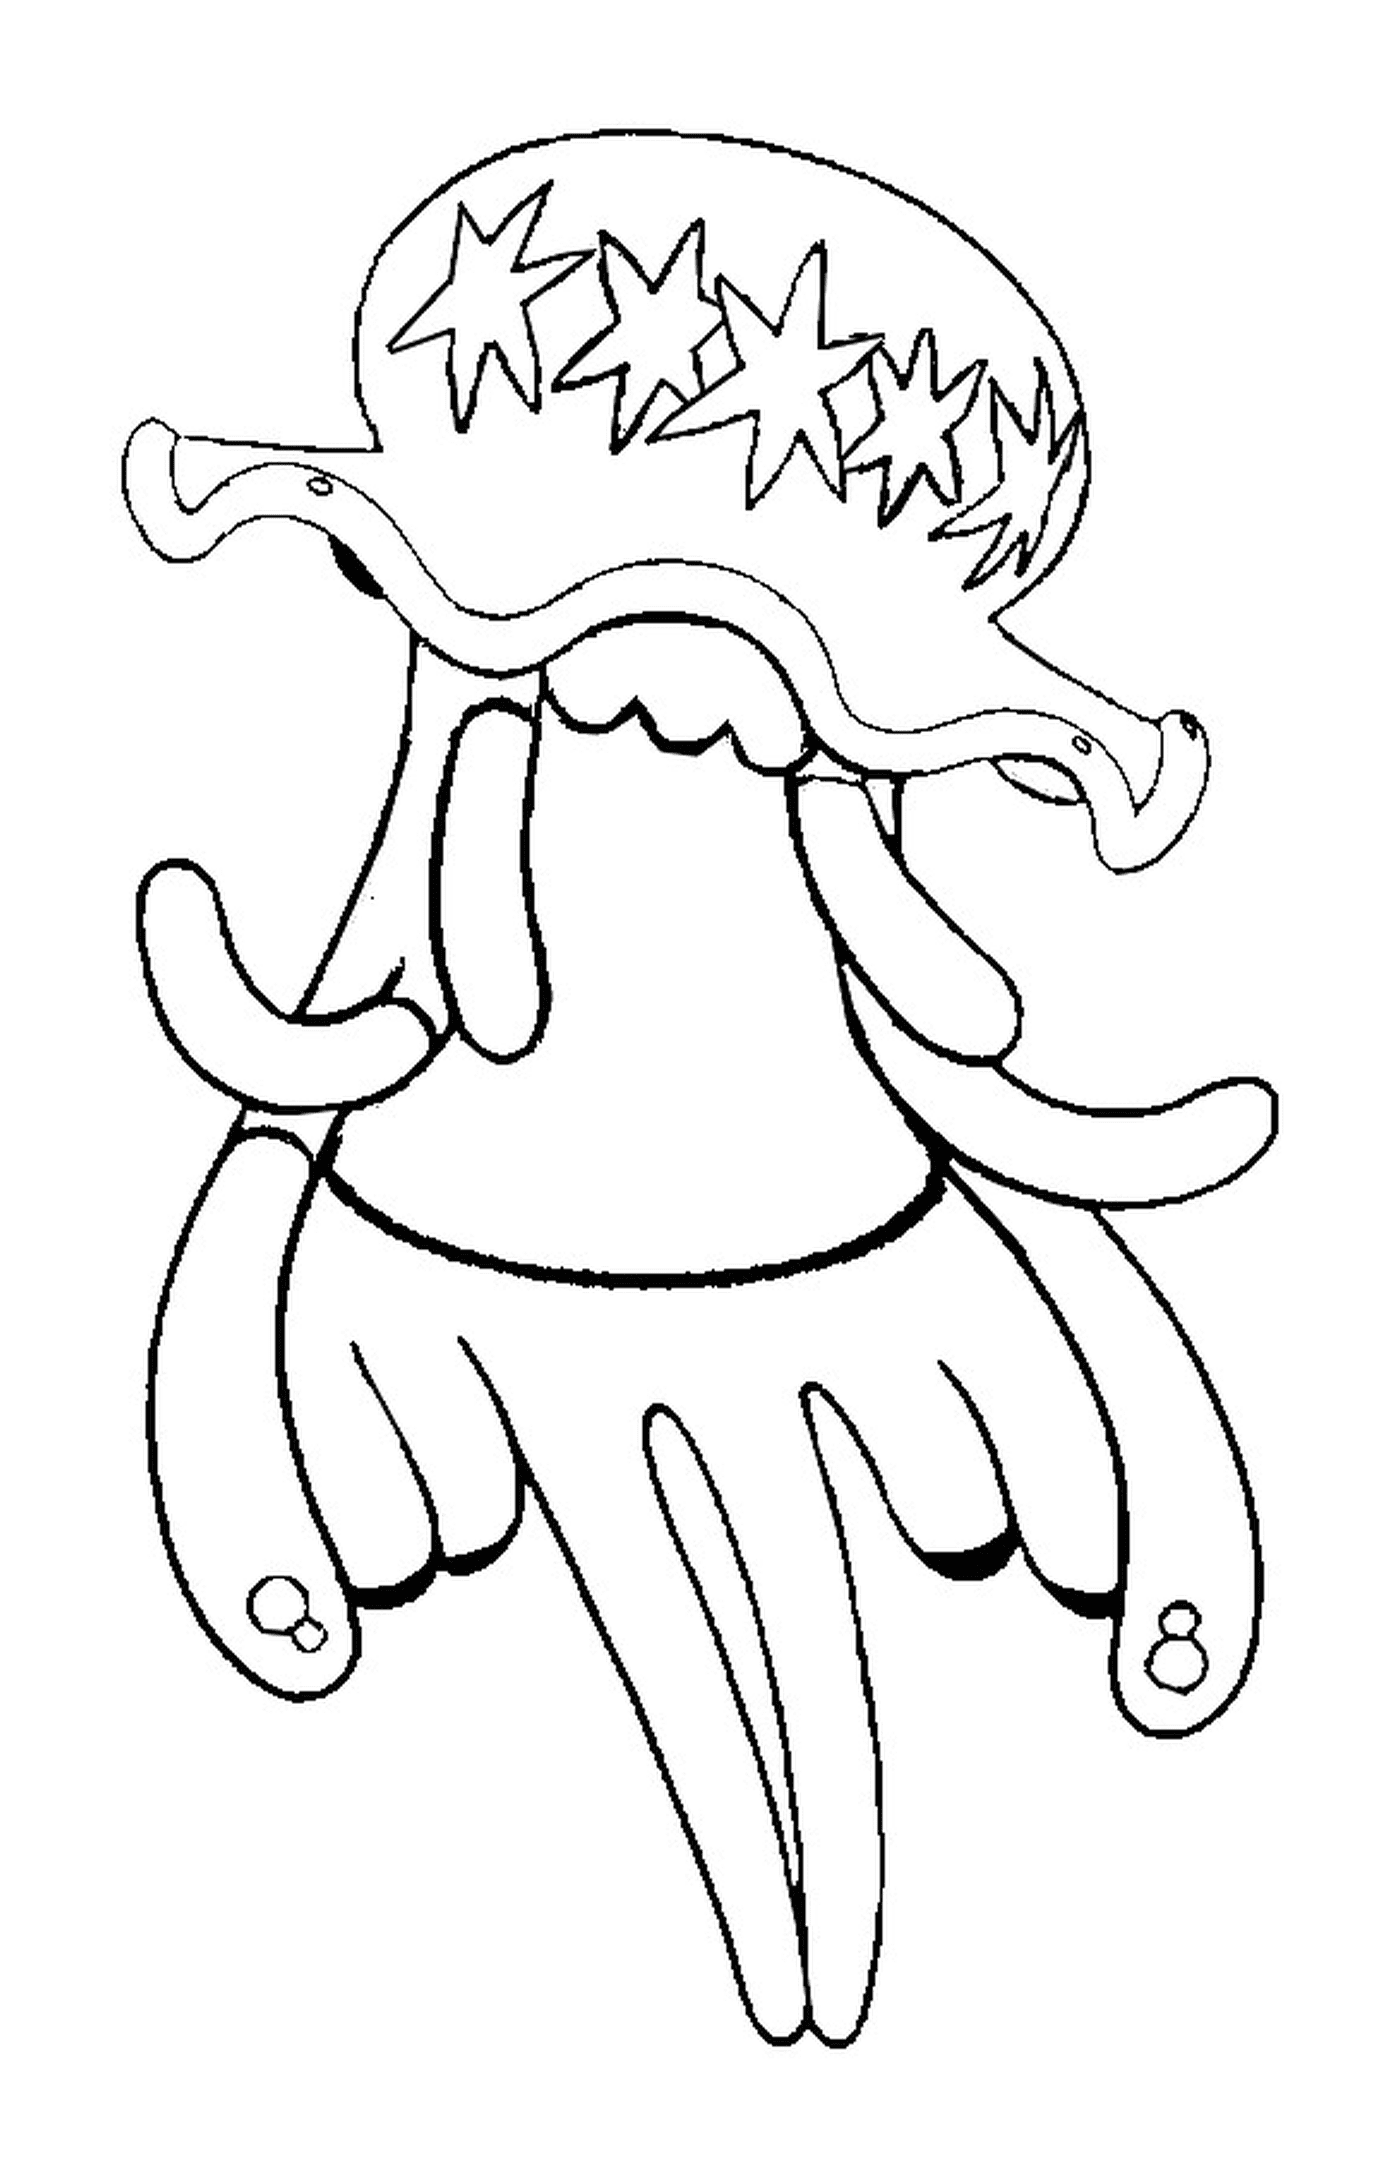  UB 01, un lungo polpo tentacolare 